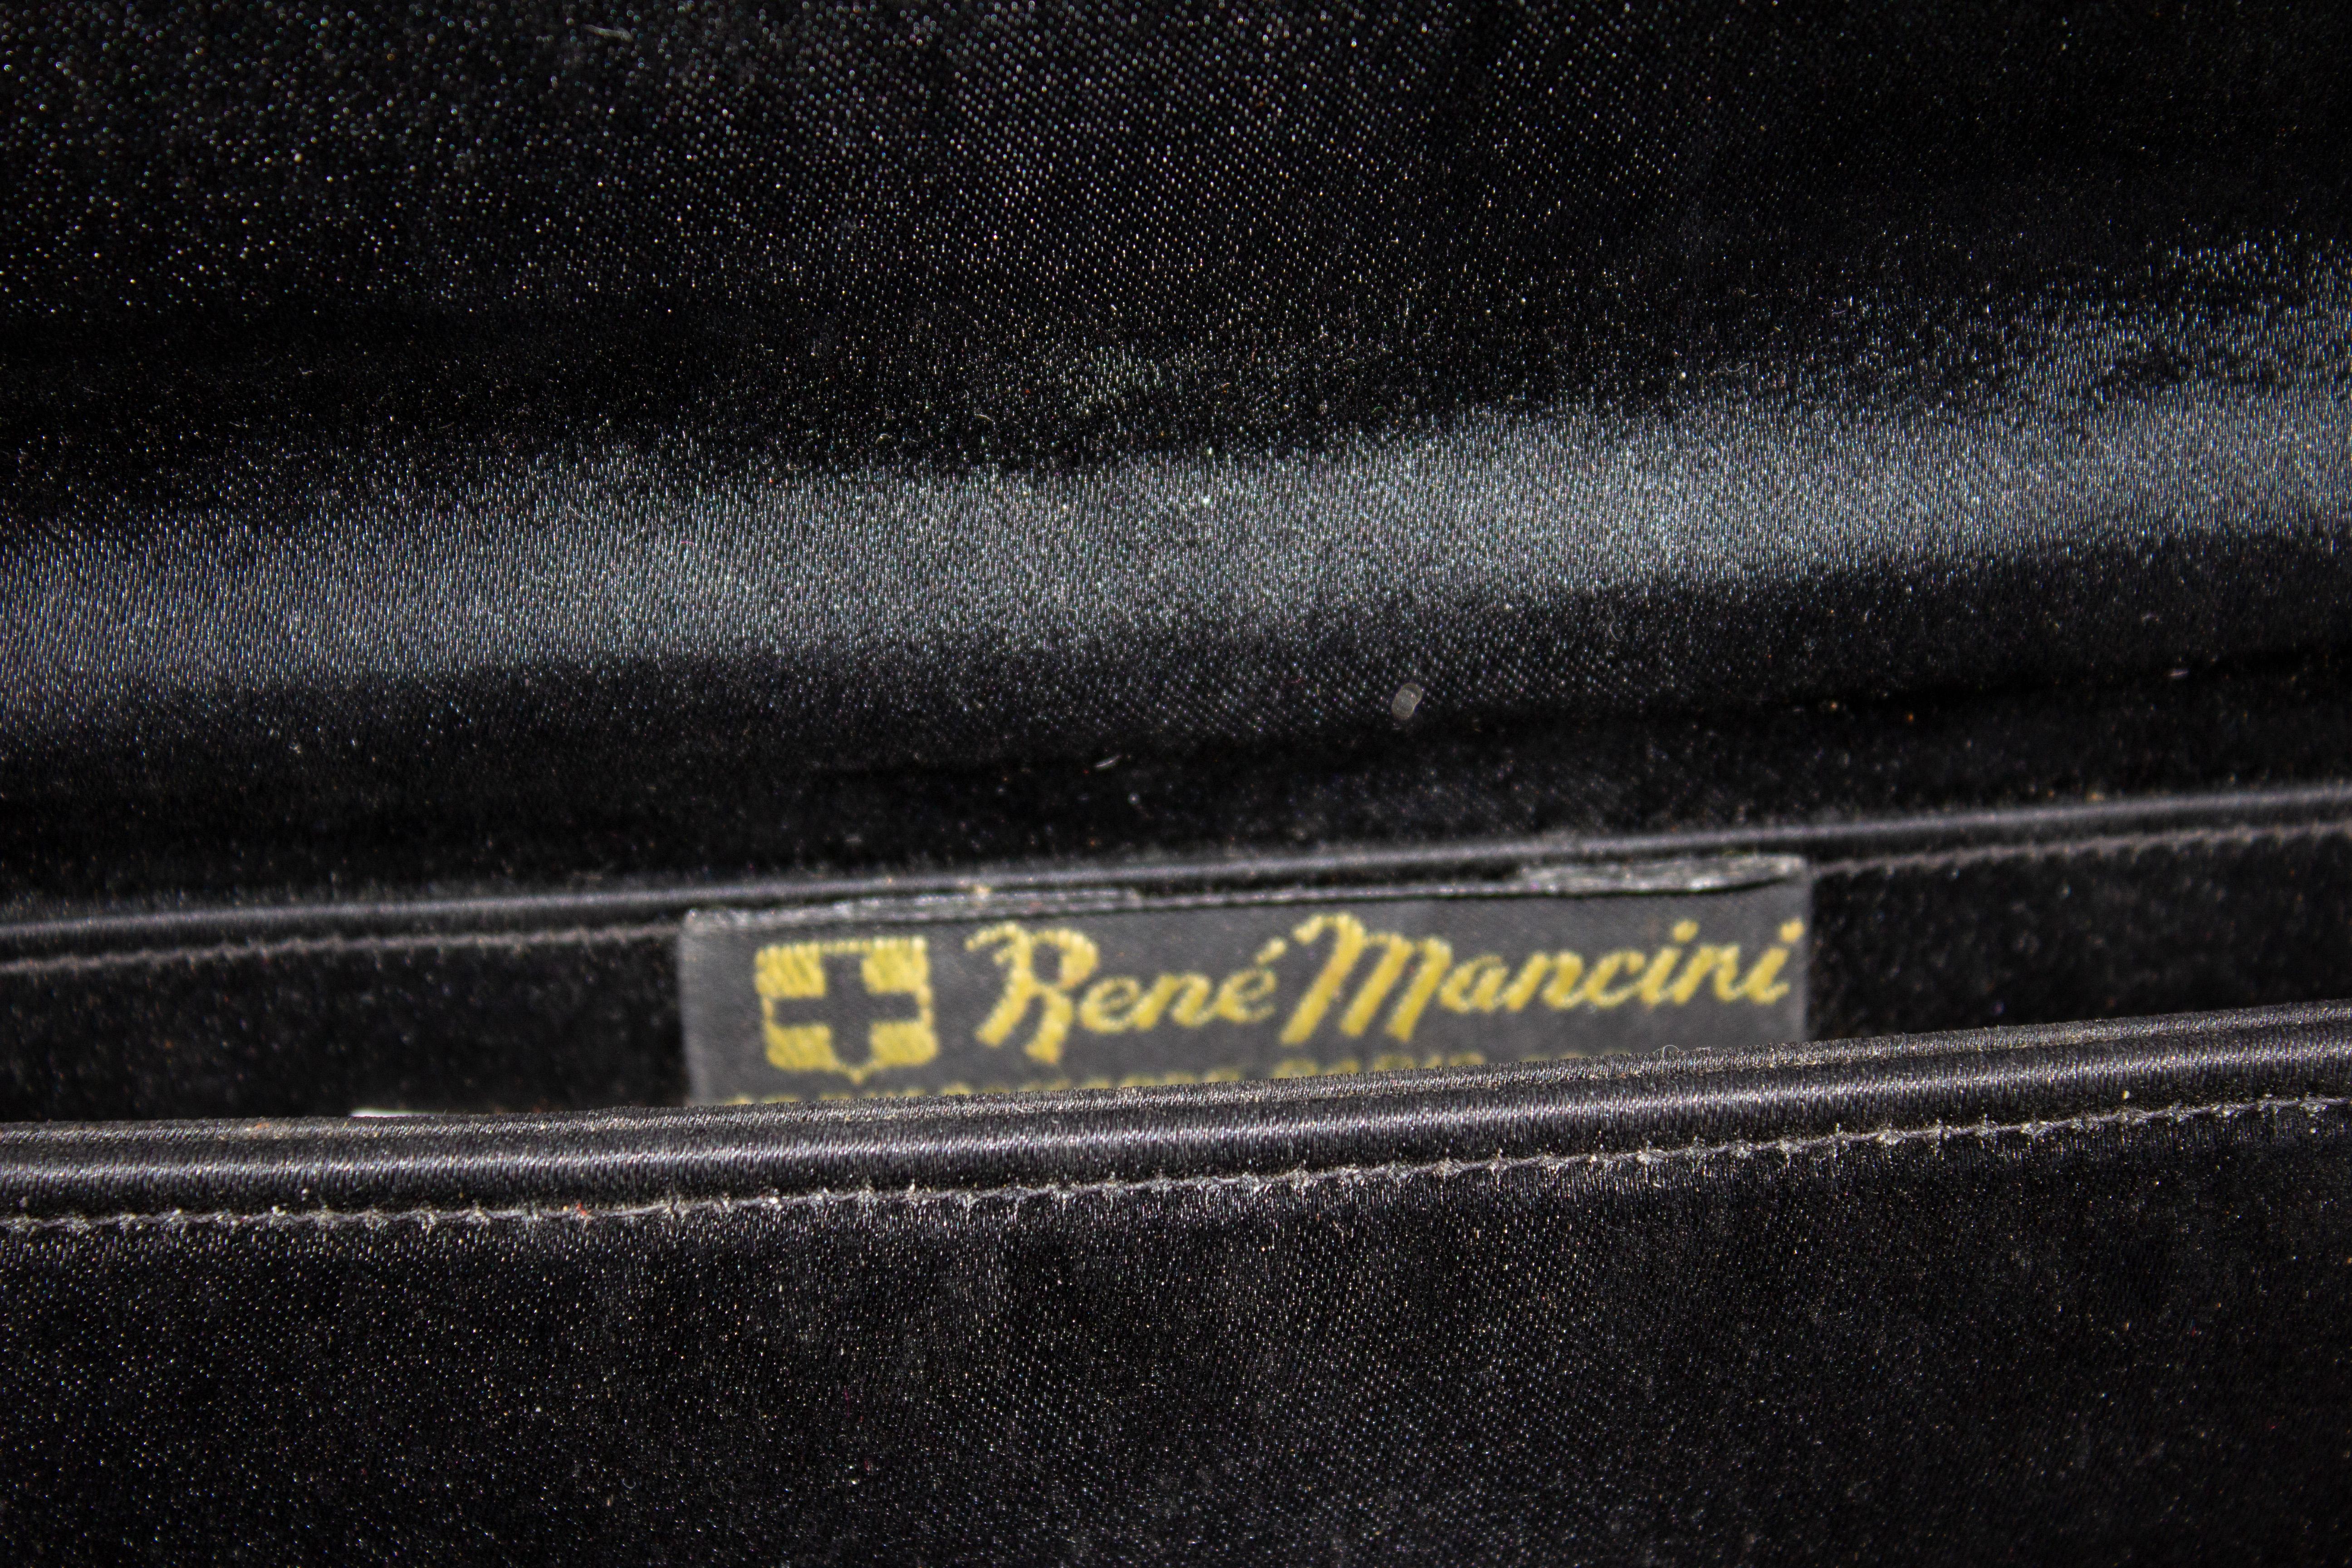 Un sac de soirée chic et vintage  par René  Mancini. En satin noir, il est doté d'un rabat sur le devant avec une fermeture à boutons, et d'une poche intérieure. Le sac présente de jolis détails dorés sur le devant et la poignée. Mesures : Largeur